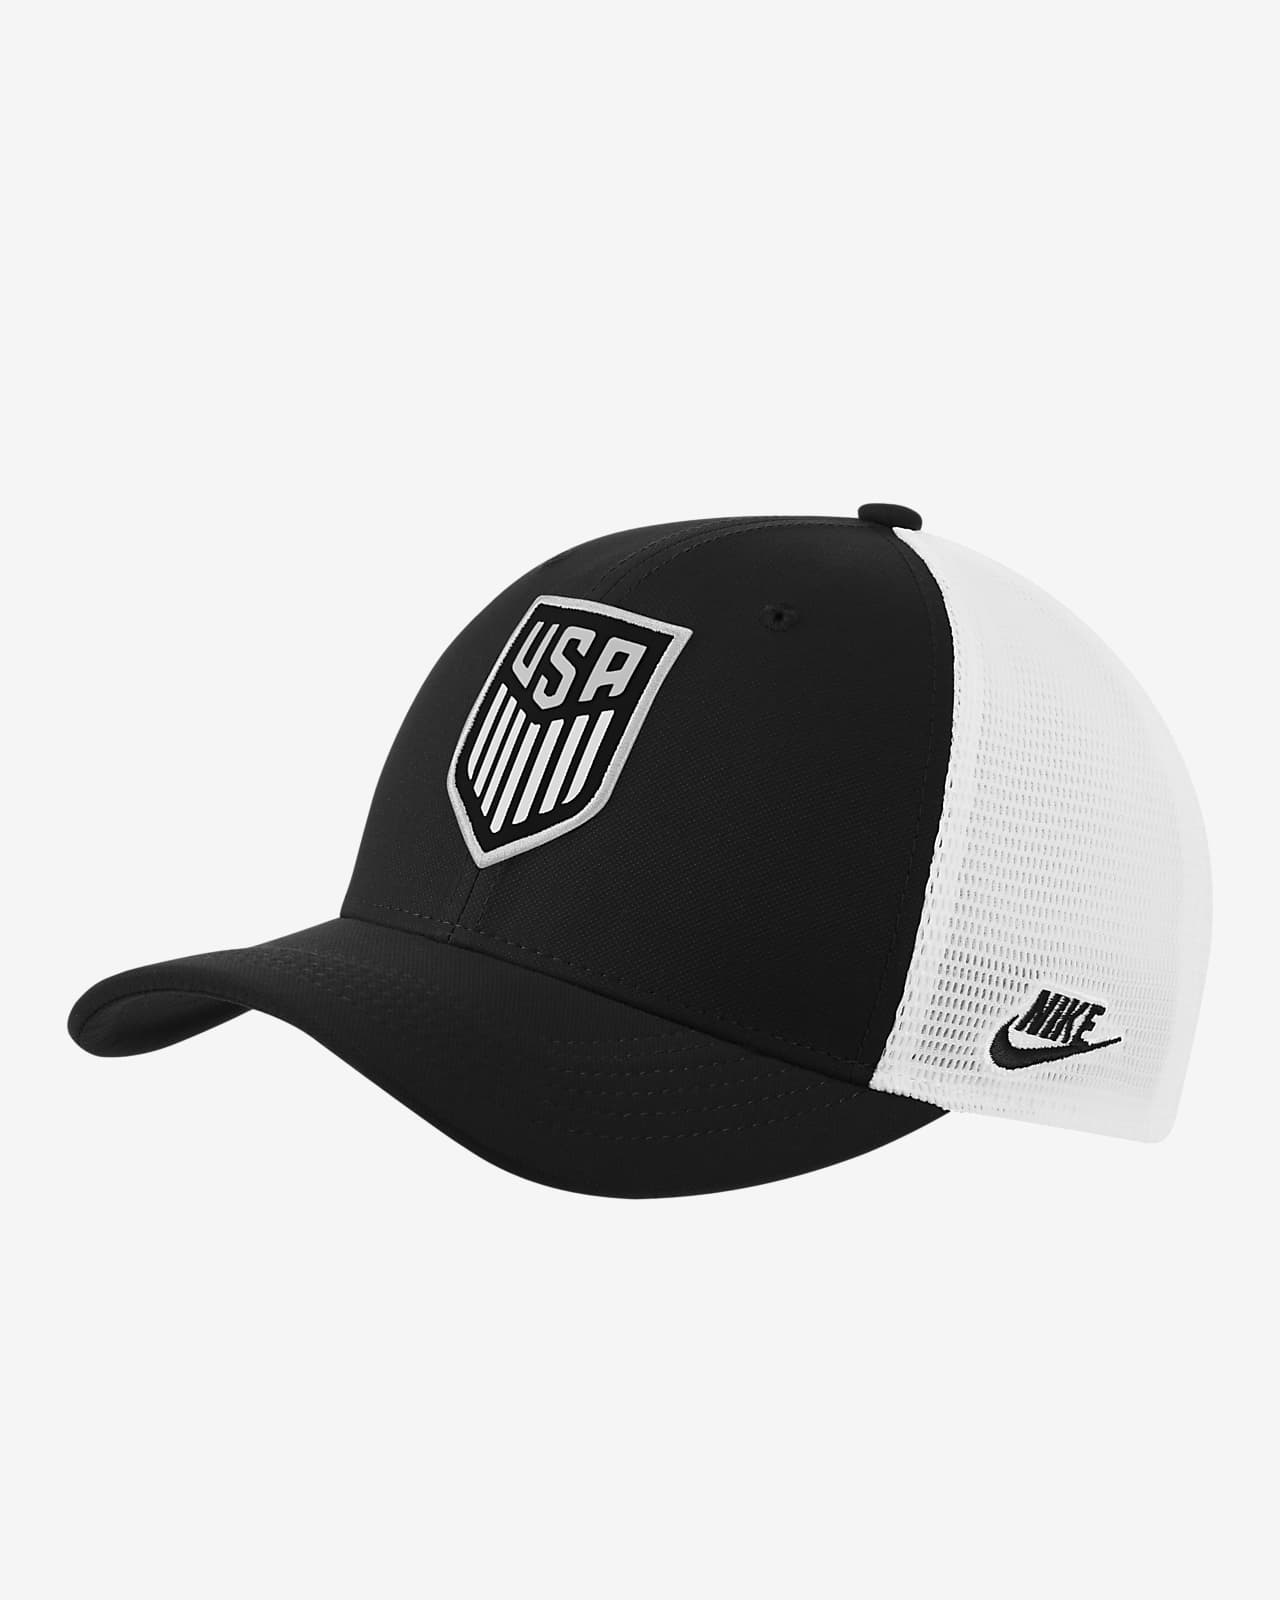 Rebajar Búho Visible U.S. Classic99 Trucker Hat. Nike.com